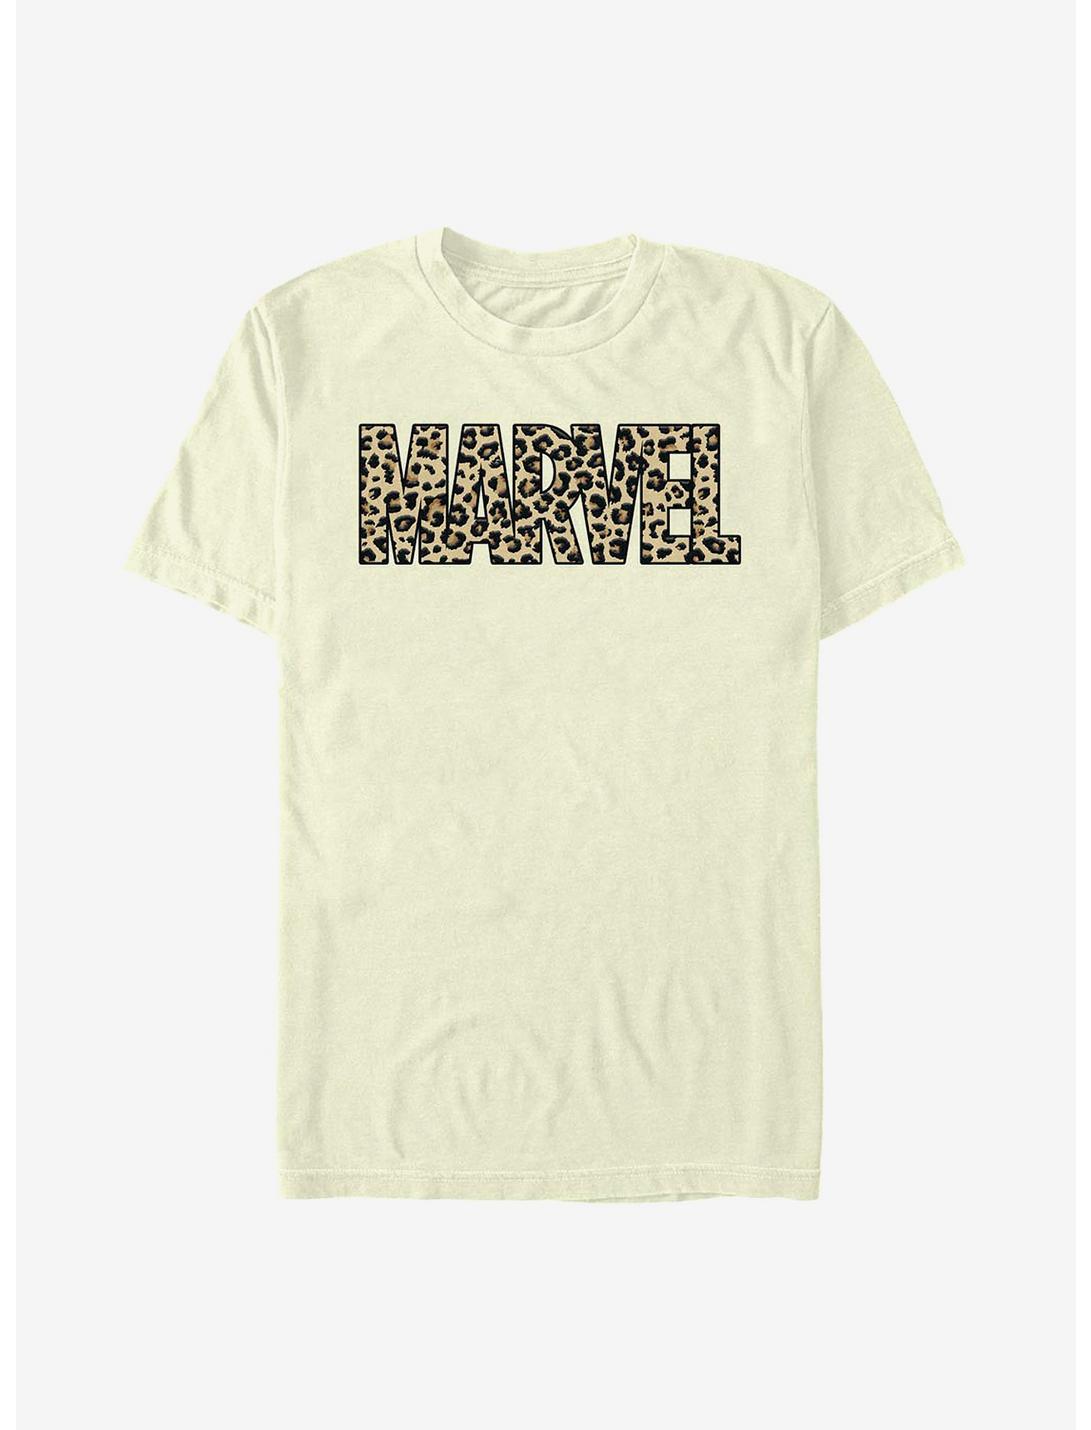 Marvel Leopard T-Shirt, NATURAL, hi-res